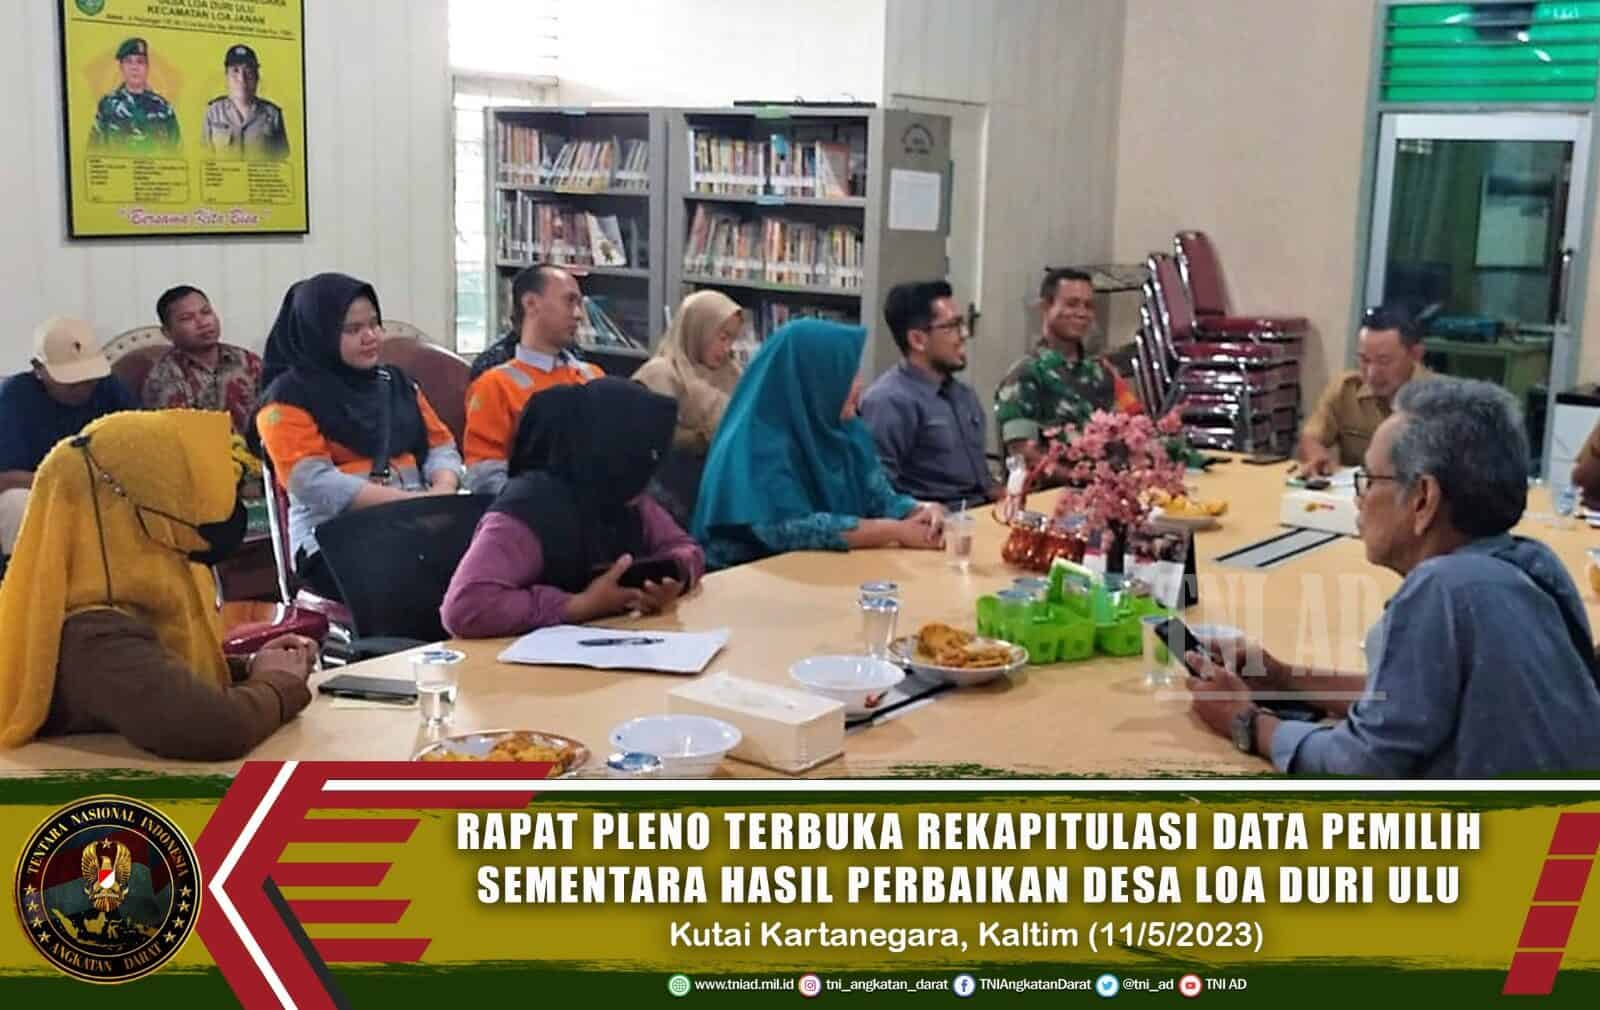 Rapat Pleno Terbuka Rekapitulasi Data Pemilih Sementara Hasil Perbaikan Desa Loa Duri Ulu